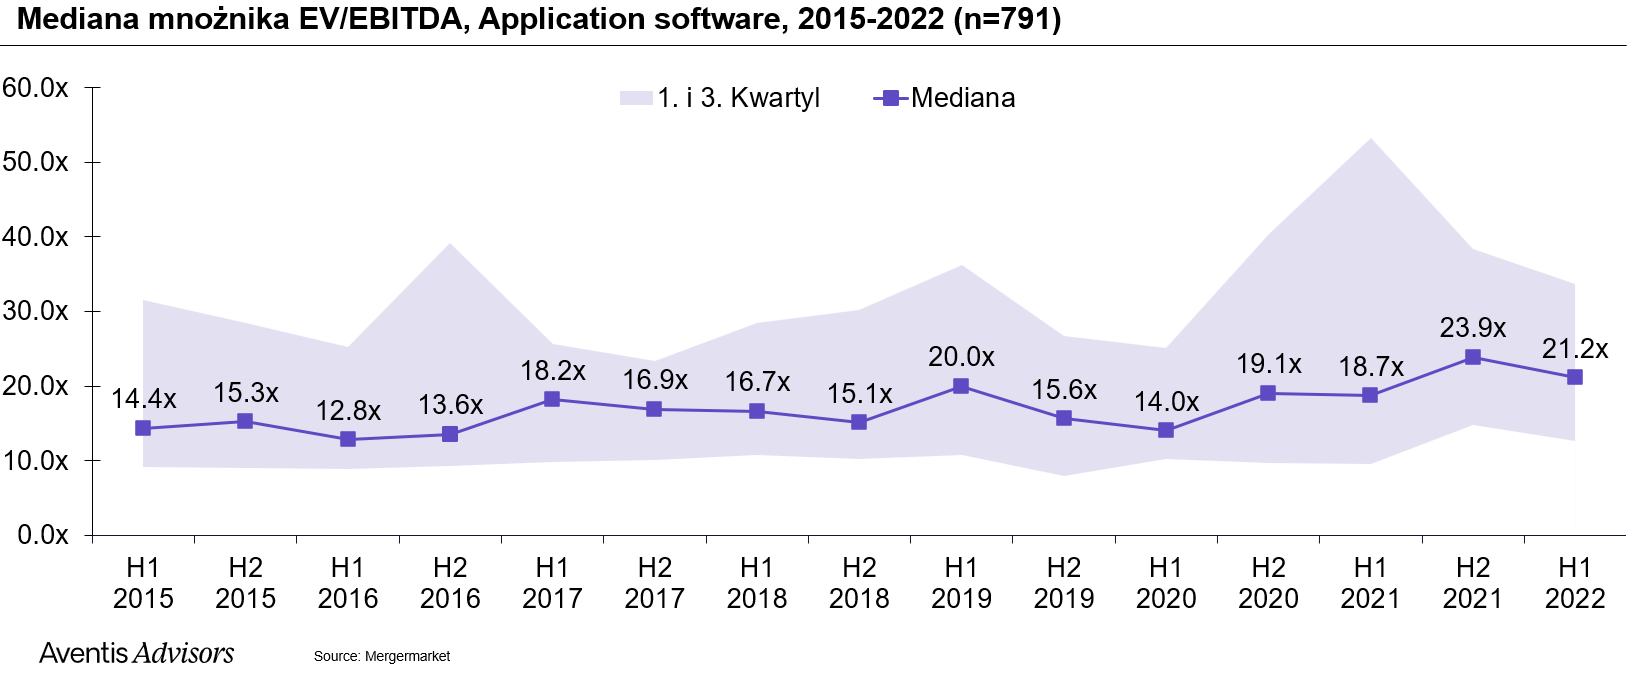 Mnożnik EV/EBITDA dla spółek software'owych w latach 2015-2022